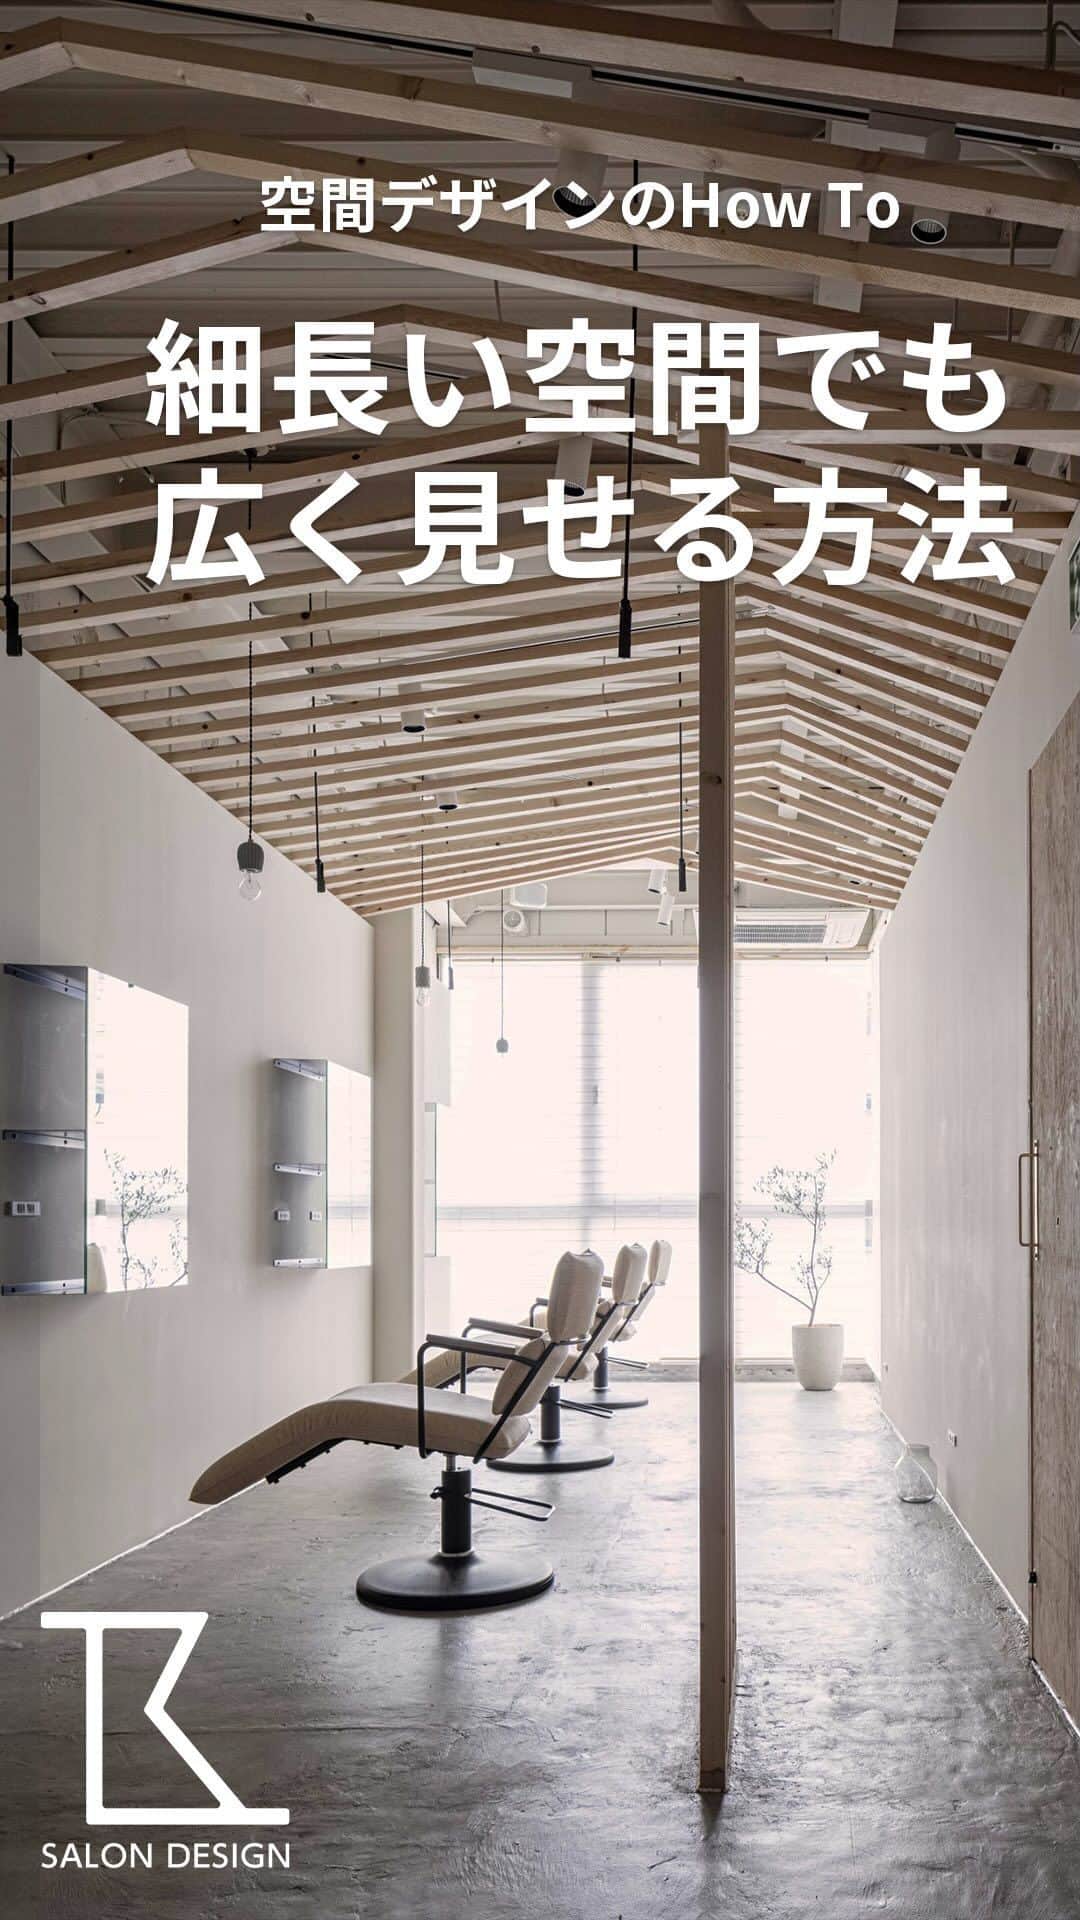 タカラベルモントのサロン施工事例のインスタグラム：「理美容室における、  空間デザインのHow Toを紹介します💡    今回は、東京都「縁と縁」様の空間デザインのご紹介です。    うなぎの寝床のような細長い空間を広く見せるため、  ・奥行方向を意識させる  ・レールや照明の存在感を無くす  ・のれんを採用  ・壁を作らずに空間を仕切る といったデザインになっています。    《Salon date》 名称：縁と縁  所在地：東京都世田谷区 床面積：58㎡(17.5坪)  ————————————— 他の空間デザインはこちらから💁‍♀️【@tb.net_salondesign】  こんな内装が見たい！等ありましたら 是非コメントで教えてくださいね♪ —————————————  #タカラベルモント#タカラスペースデザイン #美容室内装#サロン内装#サロンデザイン #理美容サロン空間事例#美容室#美容#理容室 #takarabelmont#takaraspacedesign #barber#beautysalon#shopdesign」